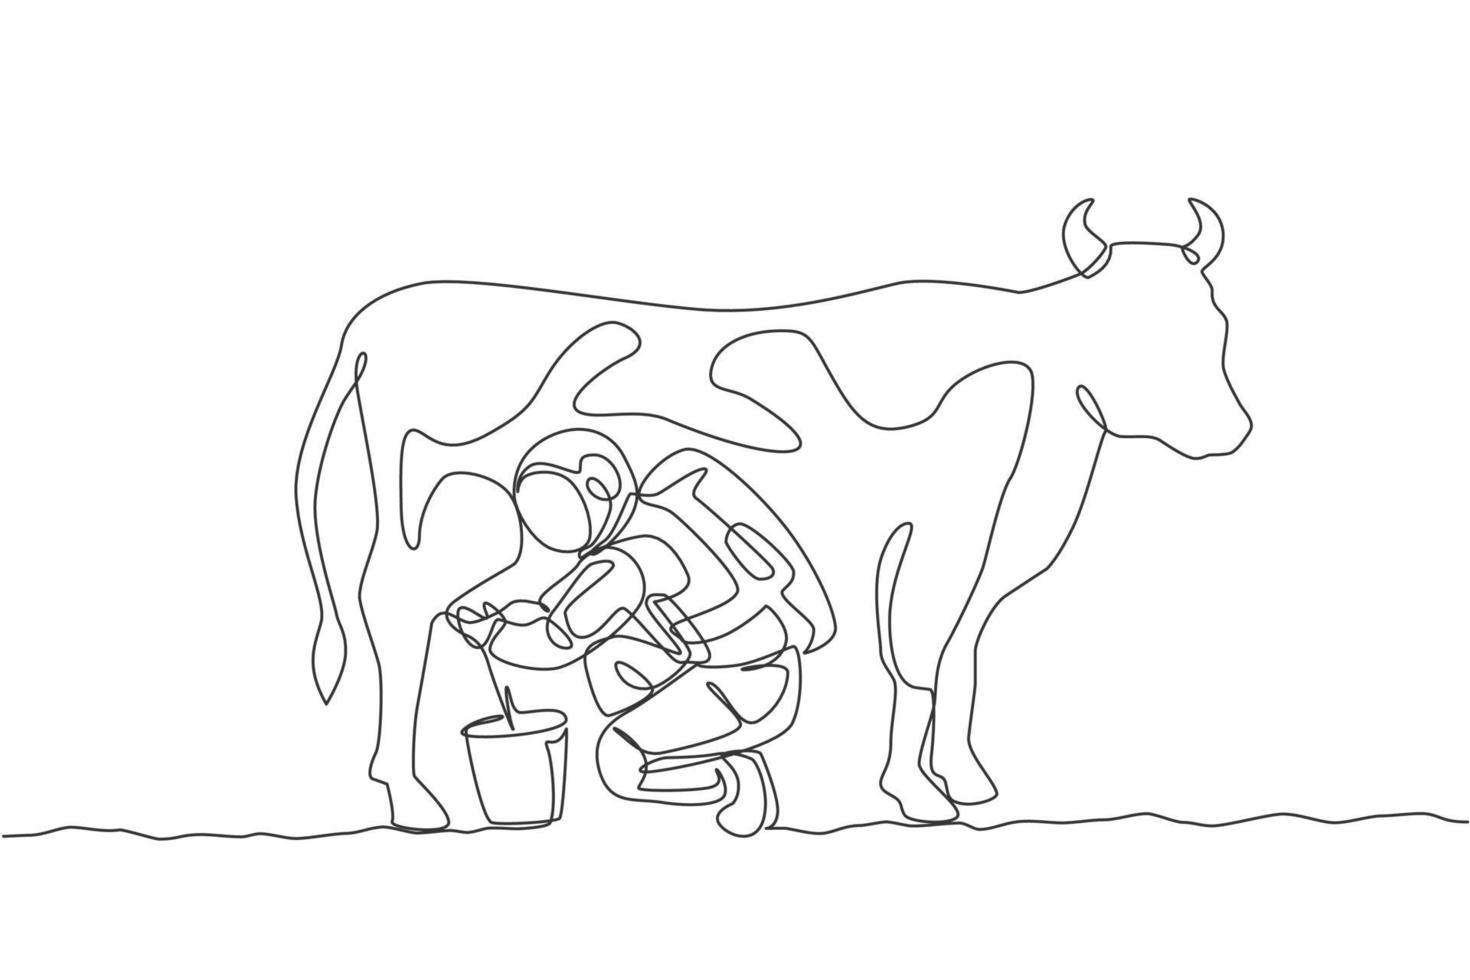 um desenho de linha único do astronauta agachado vaca leiteira e colocado no leite pode balde na ilustração gráfica do vetor da superfície da lua. conceito de agricultura do espaço sideral. design moderno de desenho de linha contínua